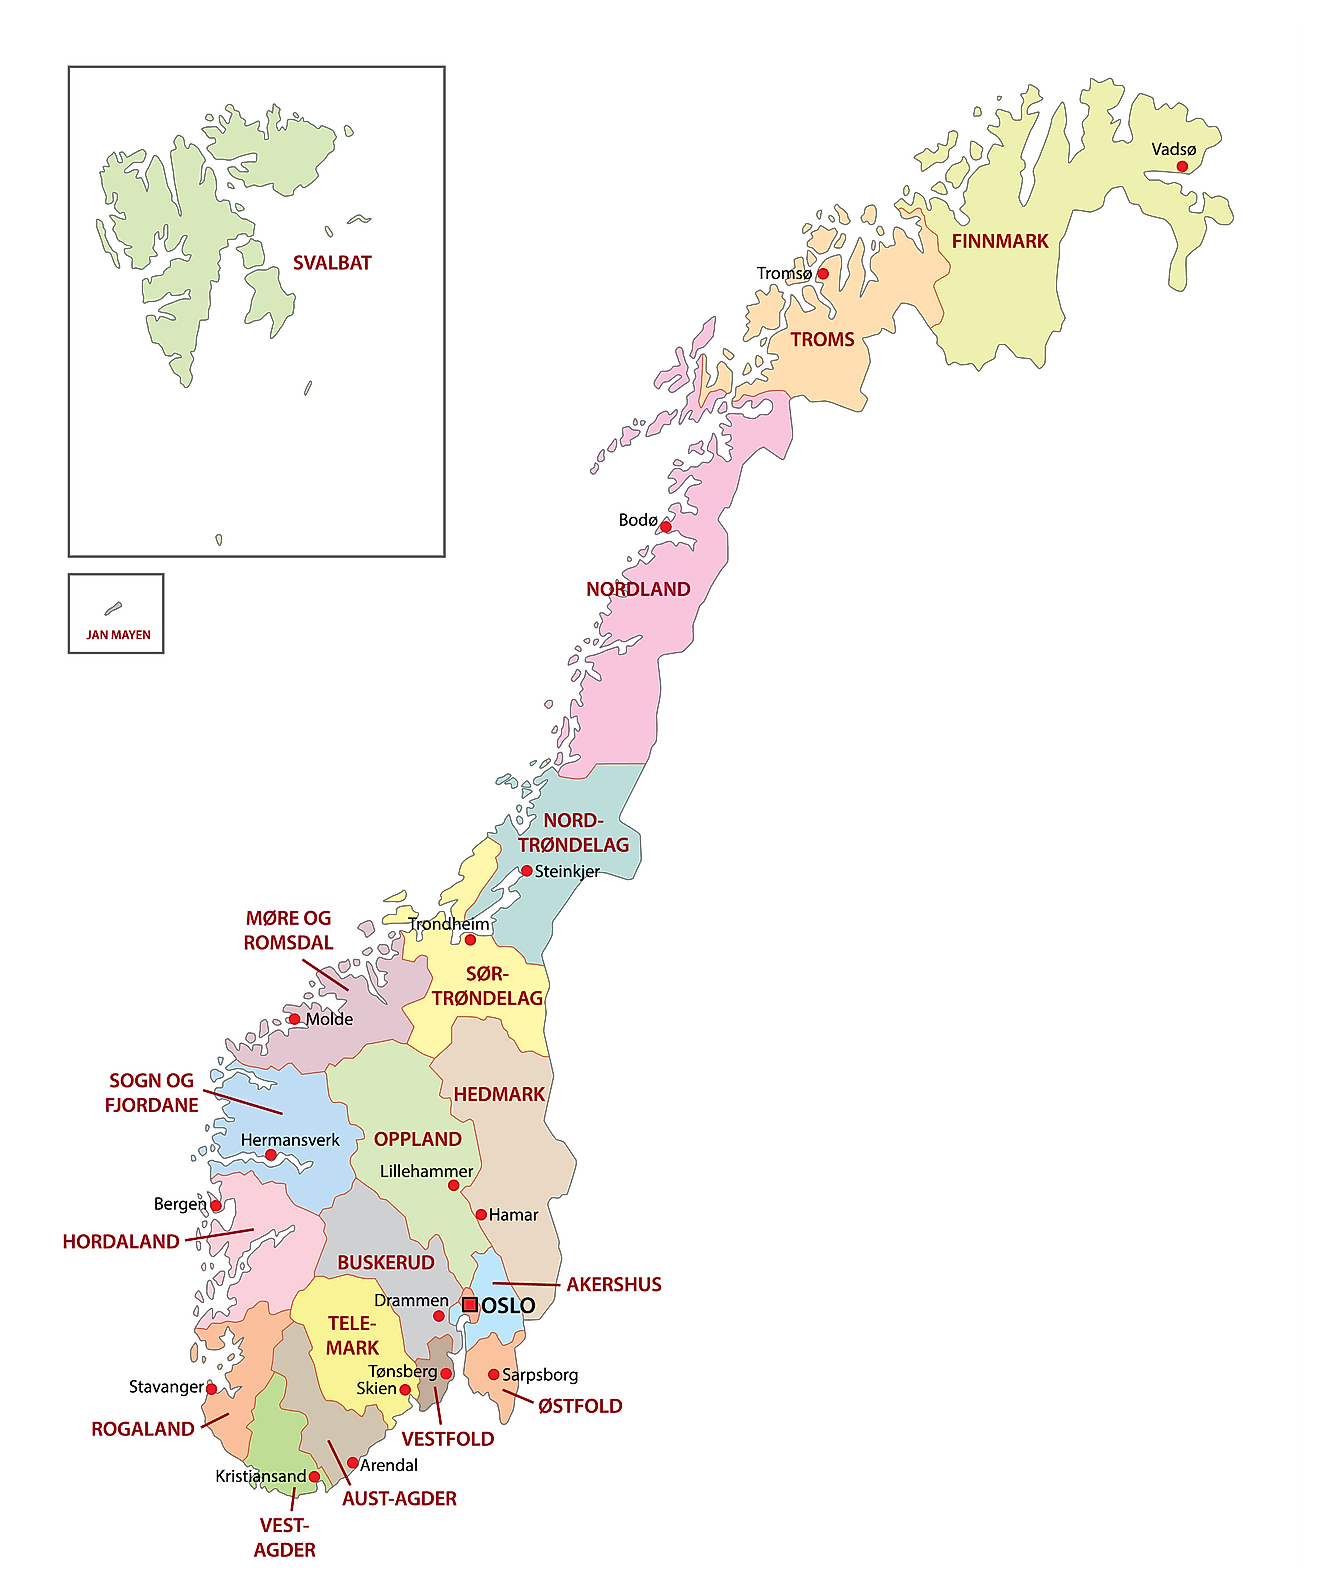 Mapa político de Noruega que muestra sus 11 regiones y la ciudad capital de Oslo.